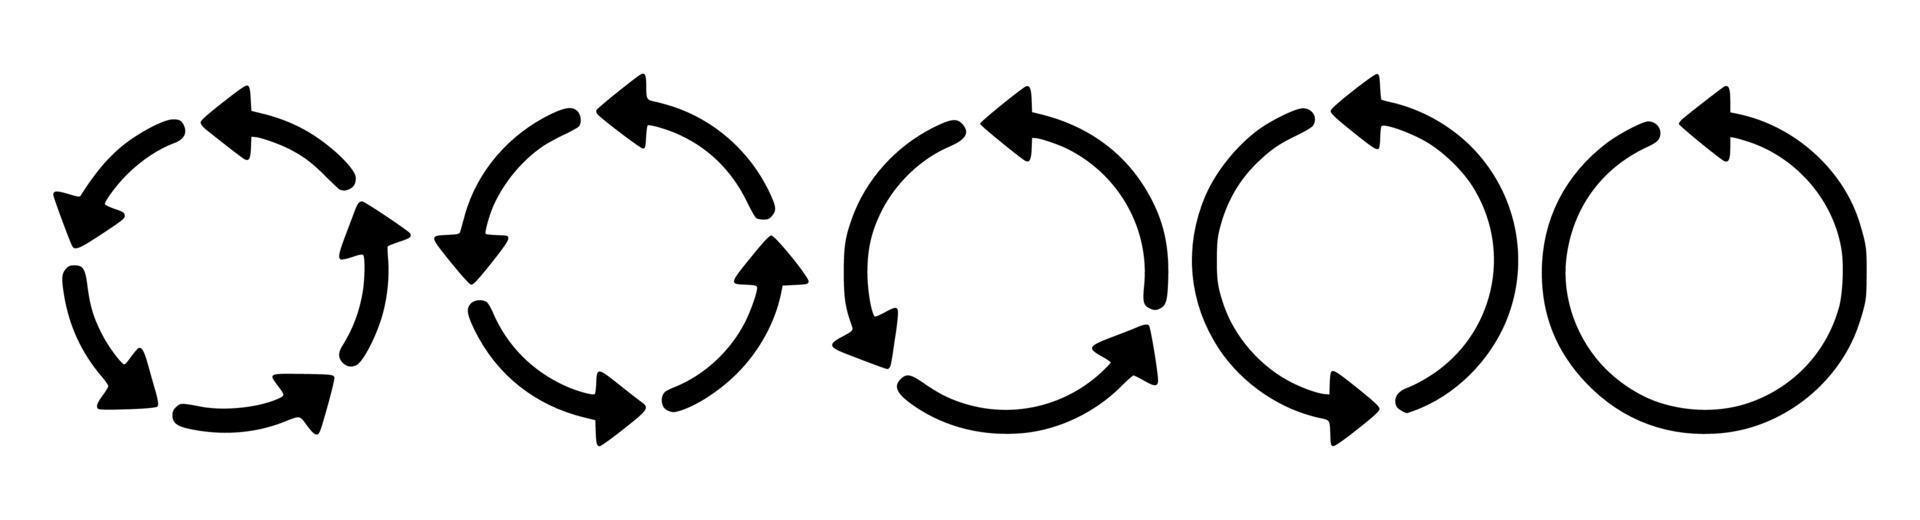 svart och vitt återvinningssymbol vektor